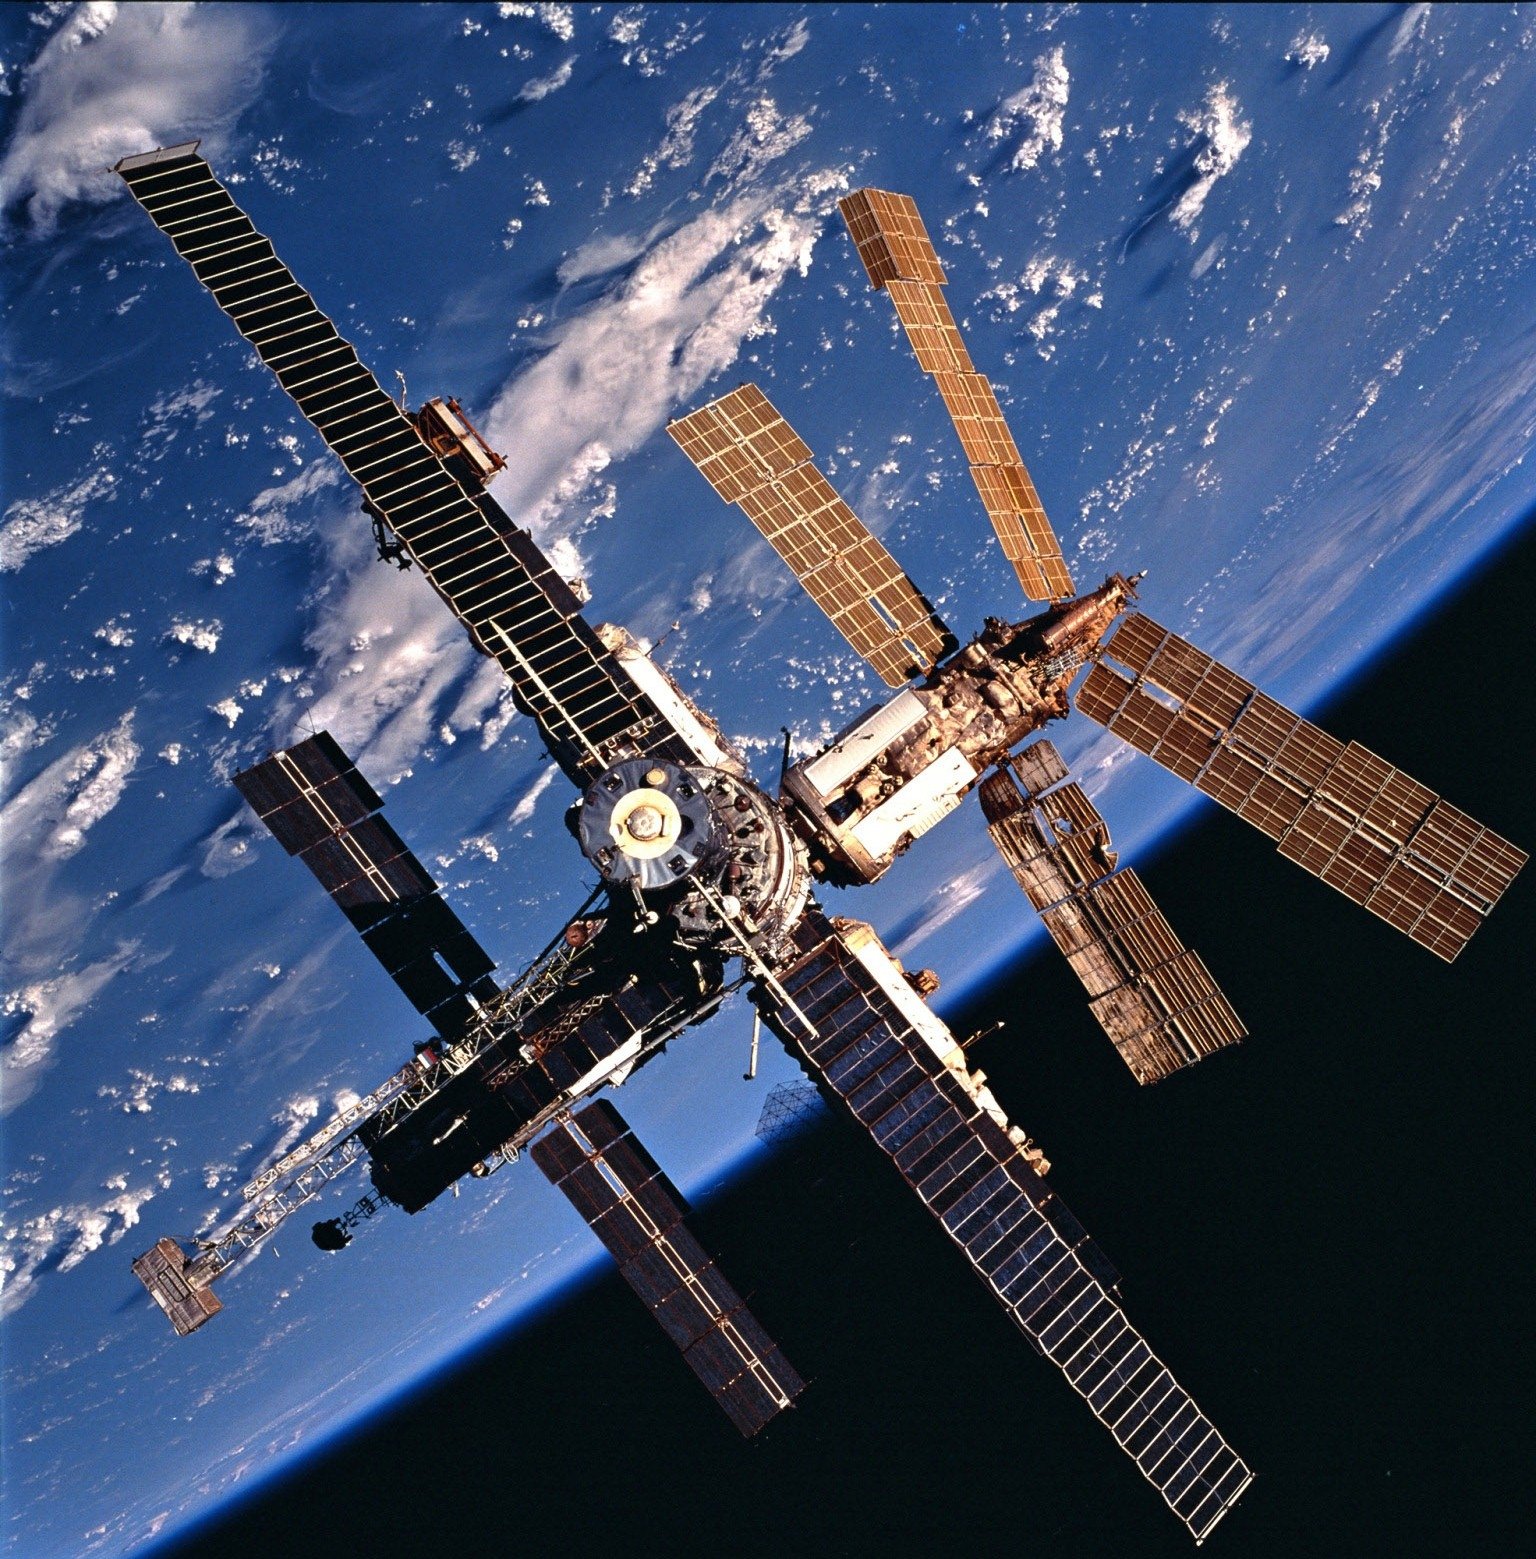 Mir. Многомодульная орбитальная станция мир. МКС 1986. Атлантис STS-86. Космическая станция мир 2001.